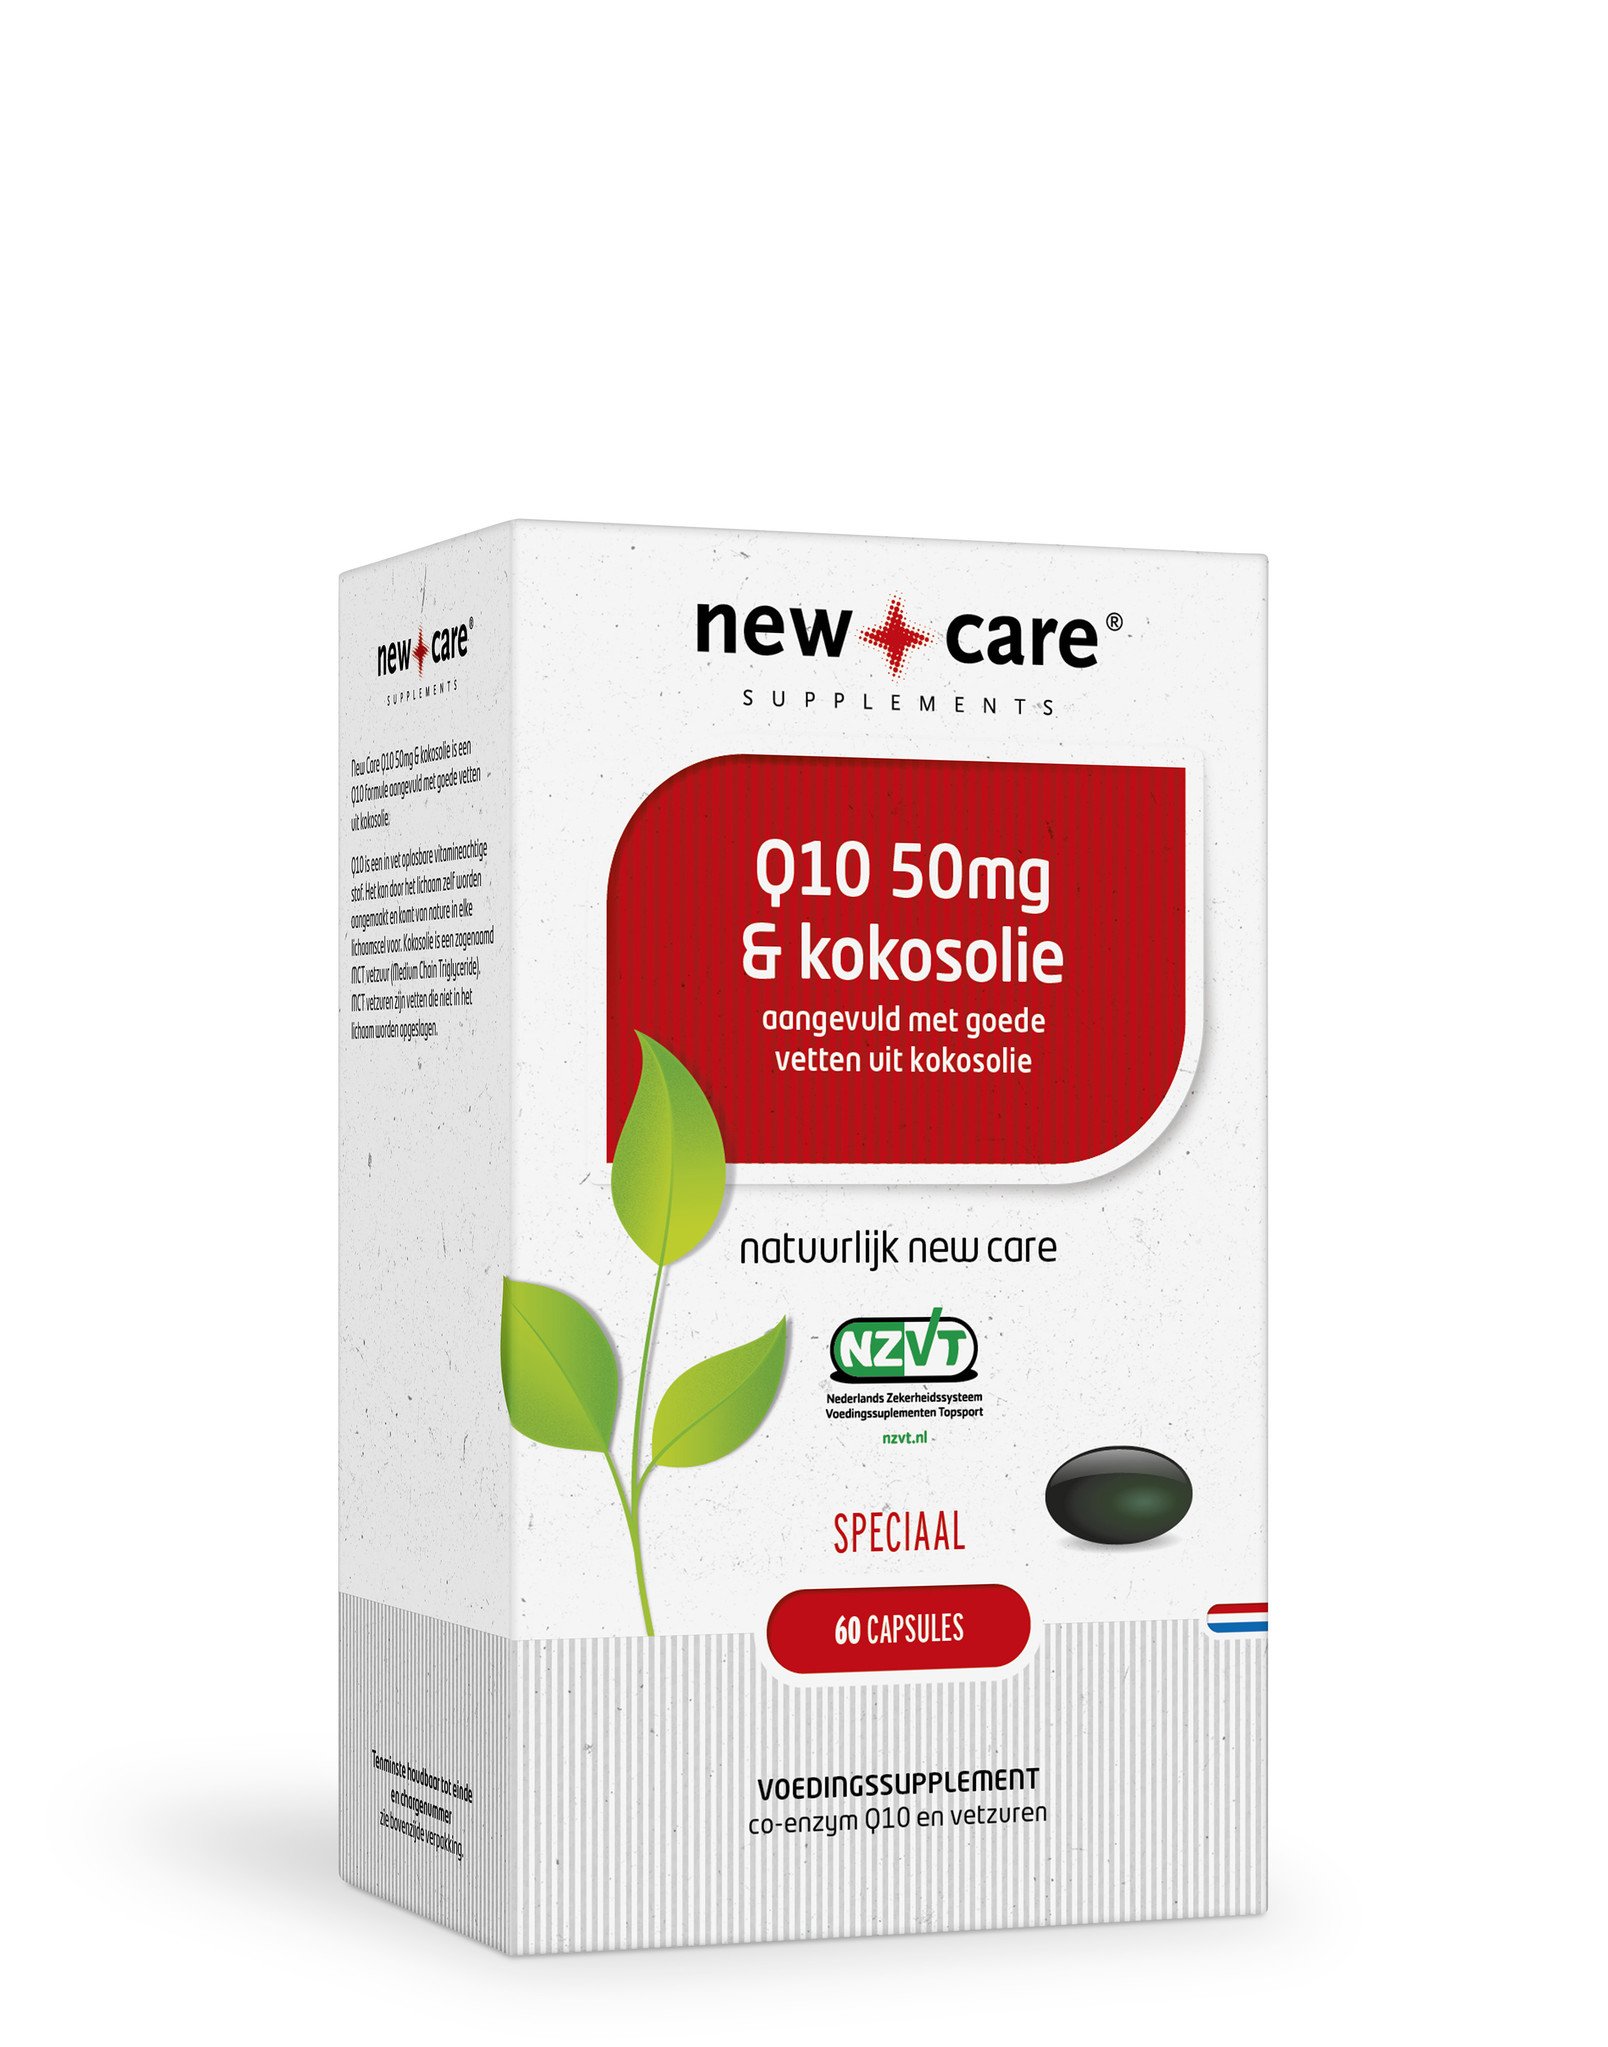 NewCare Q10 50mg & kokosolie koop je nu snel en voordelig bij Sportievevoeding.nl Sportieve Voeding